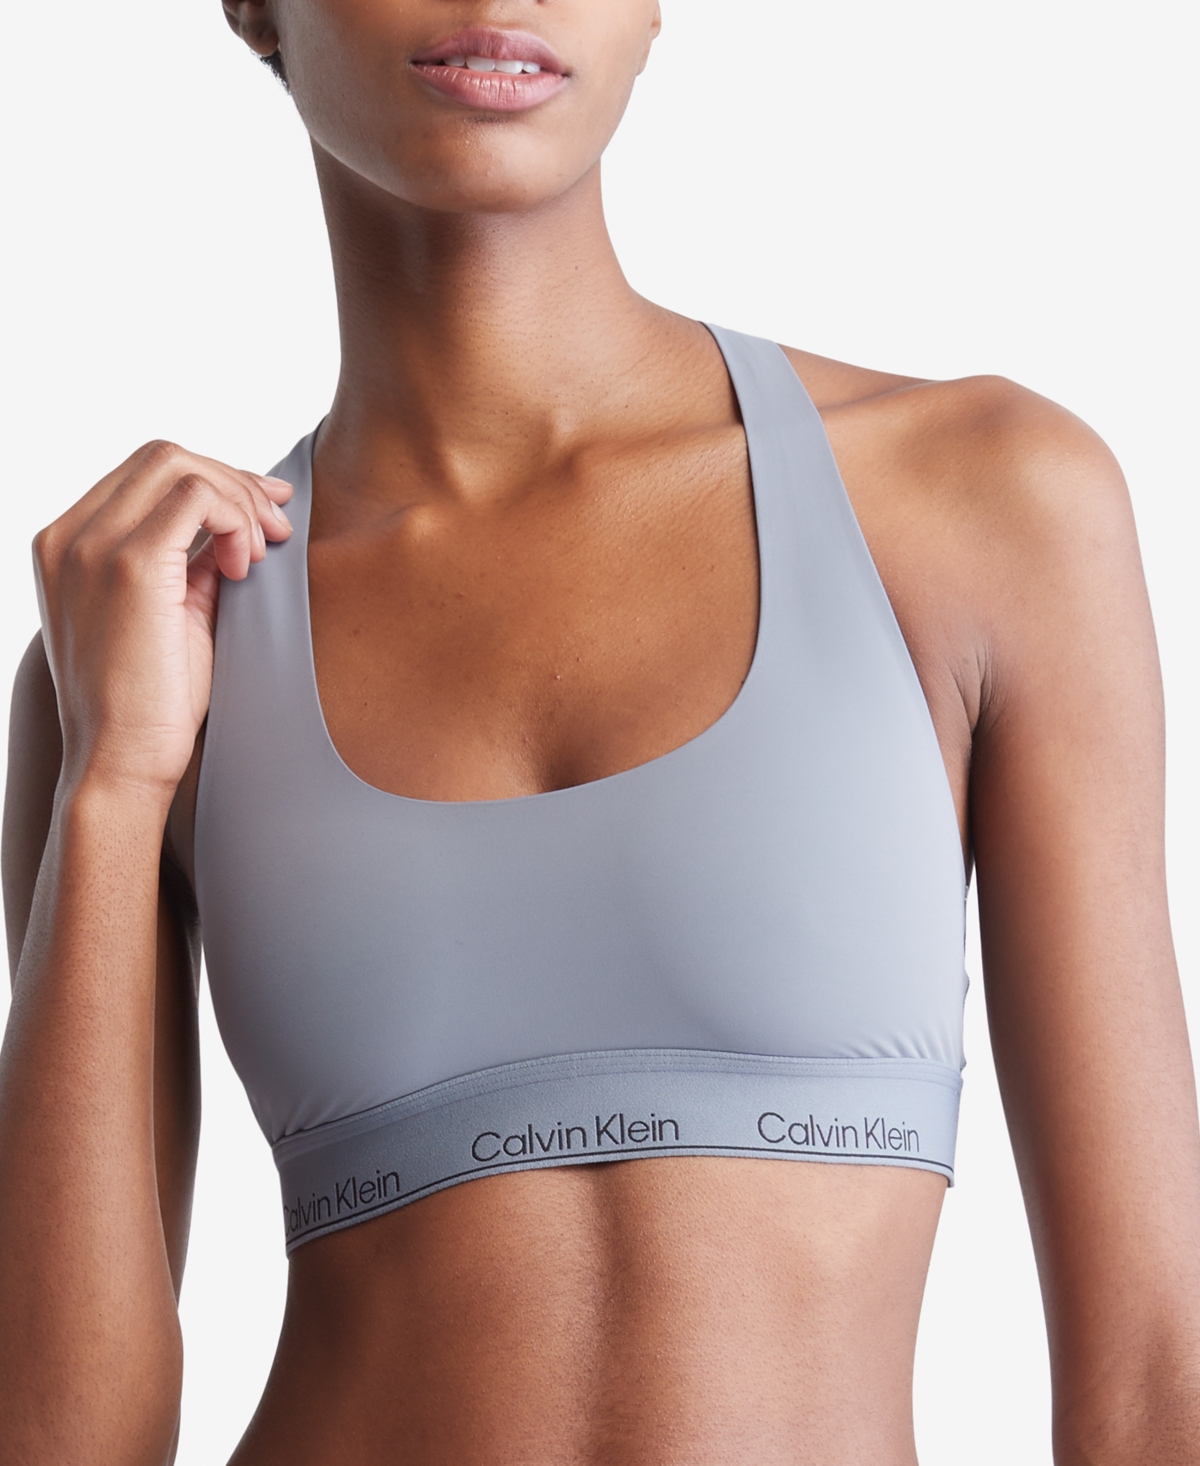 Calvin Klein Underwear CK One Cotton Unlined Bralette in Nymph's